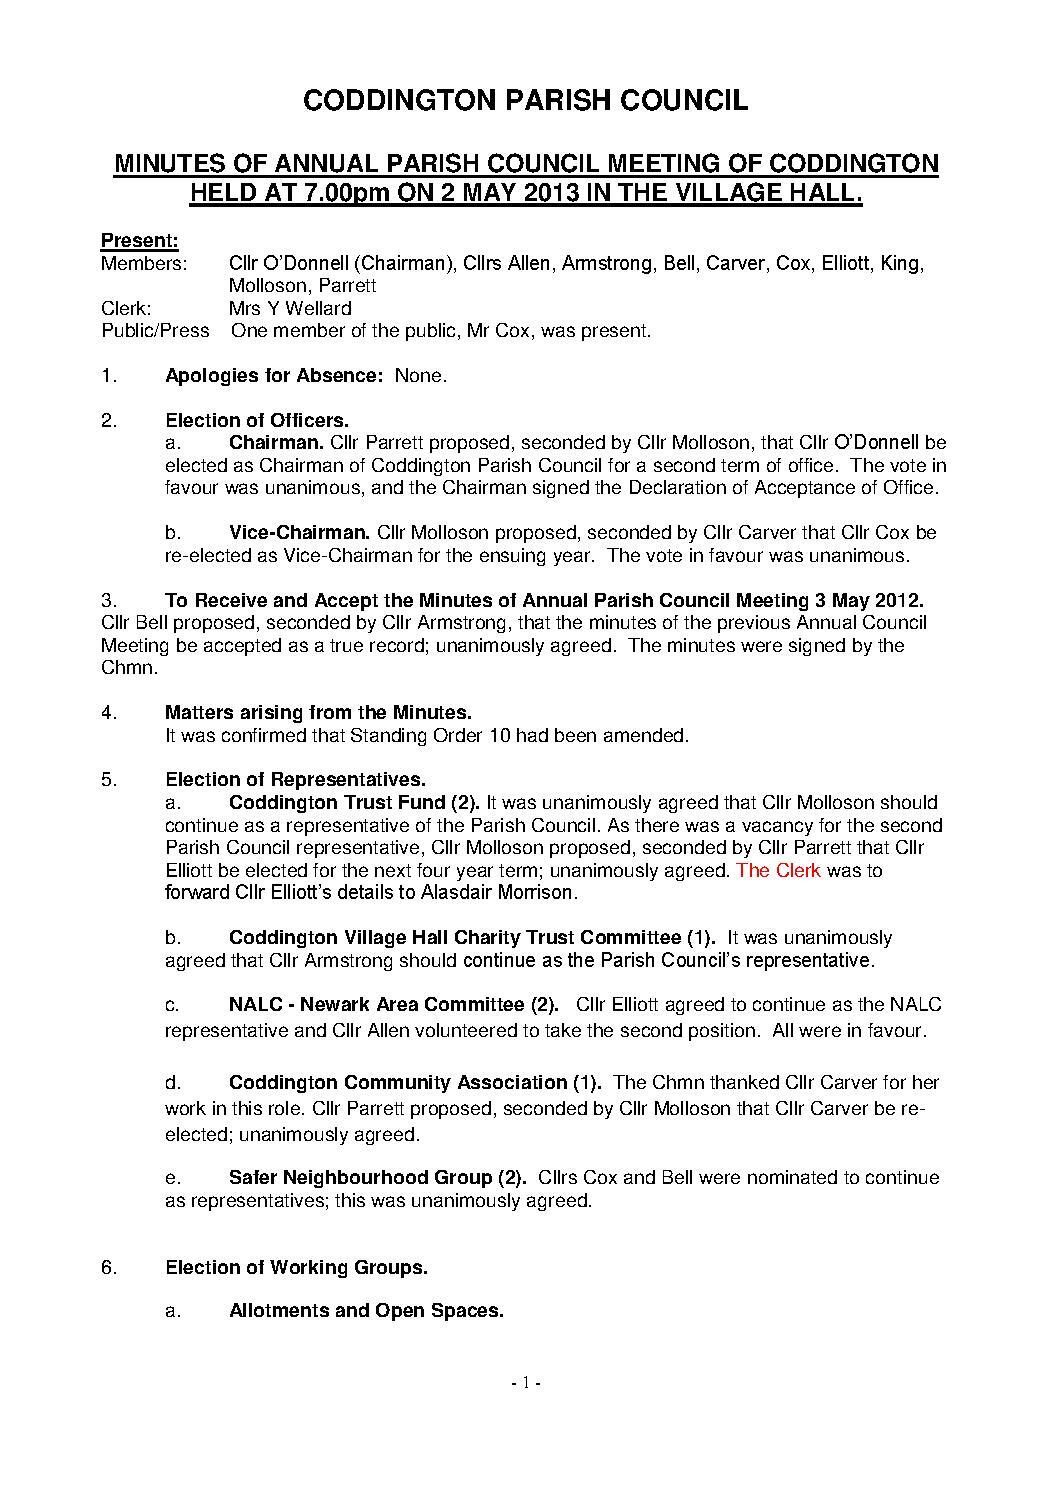 Annual Parish Council Meeting May 2013 Minutes